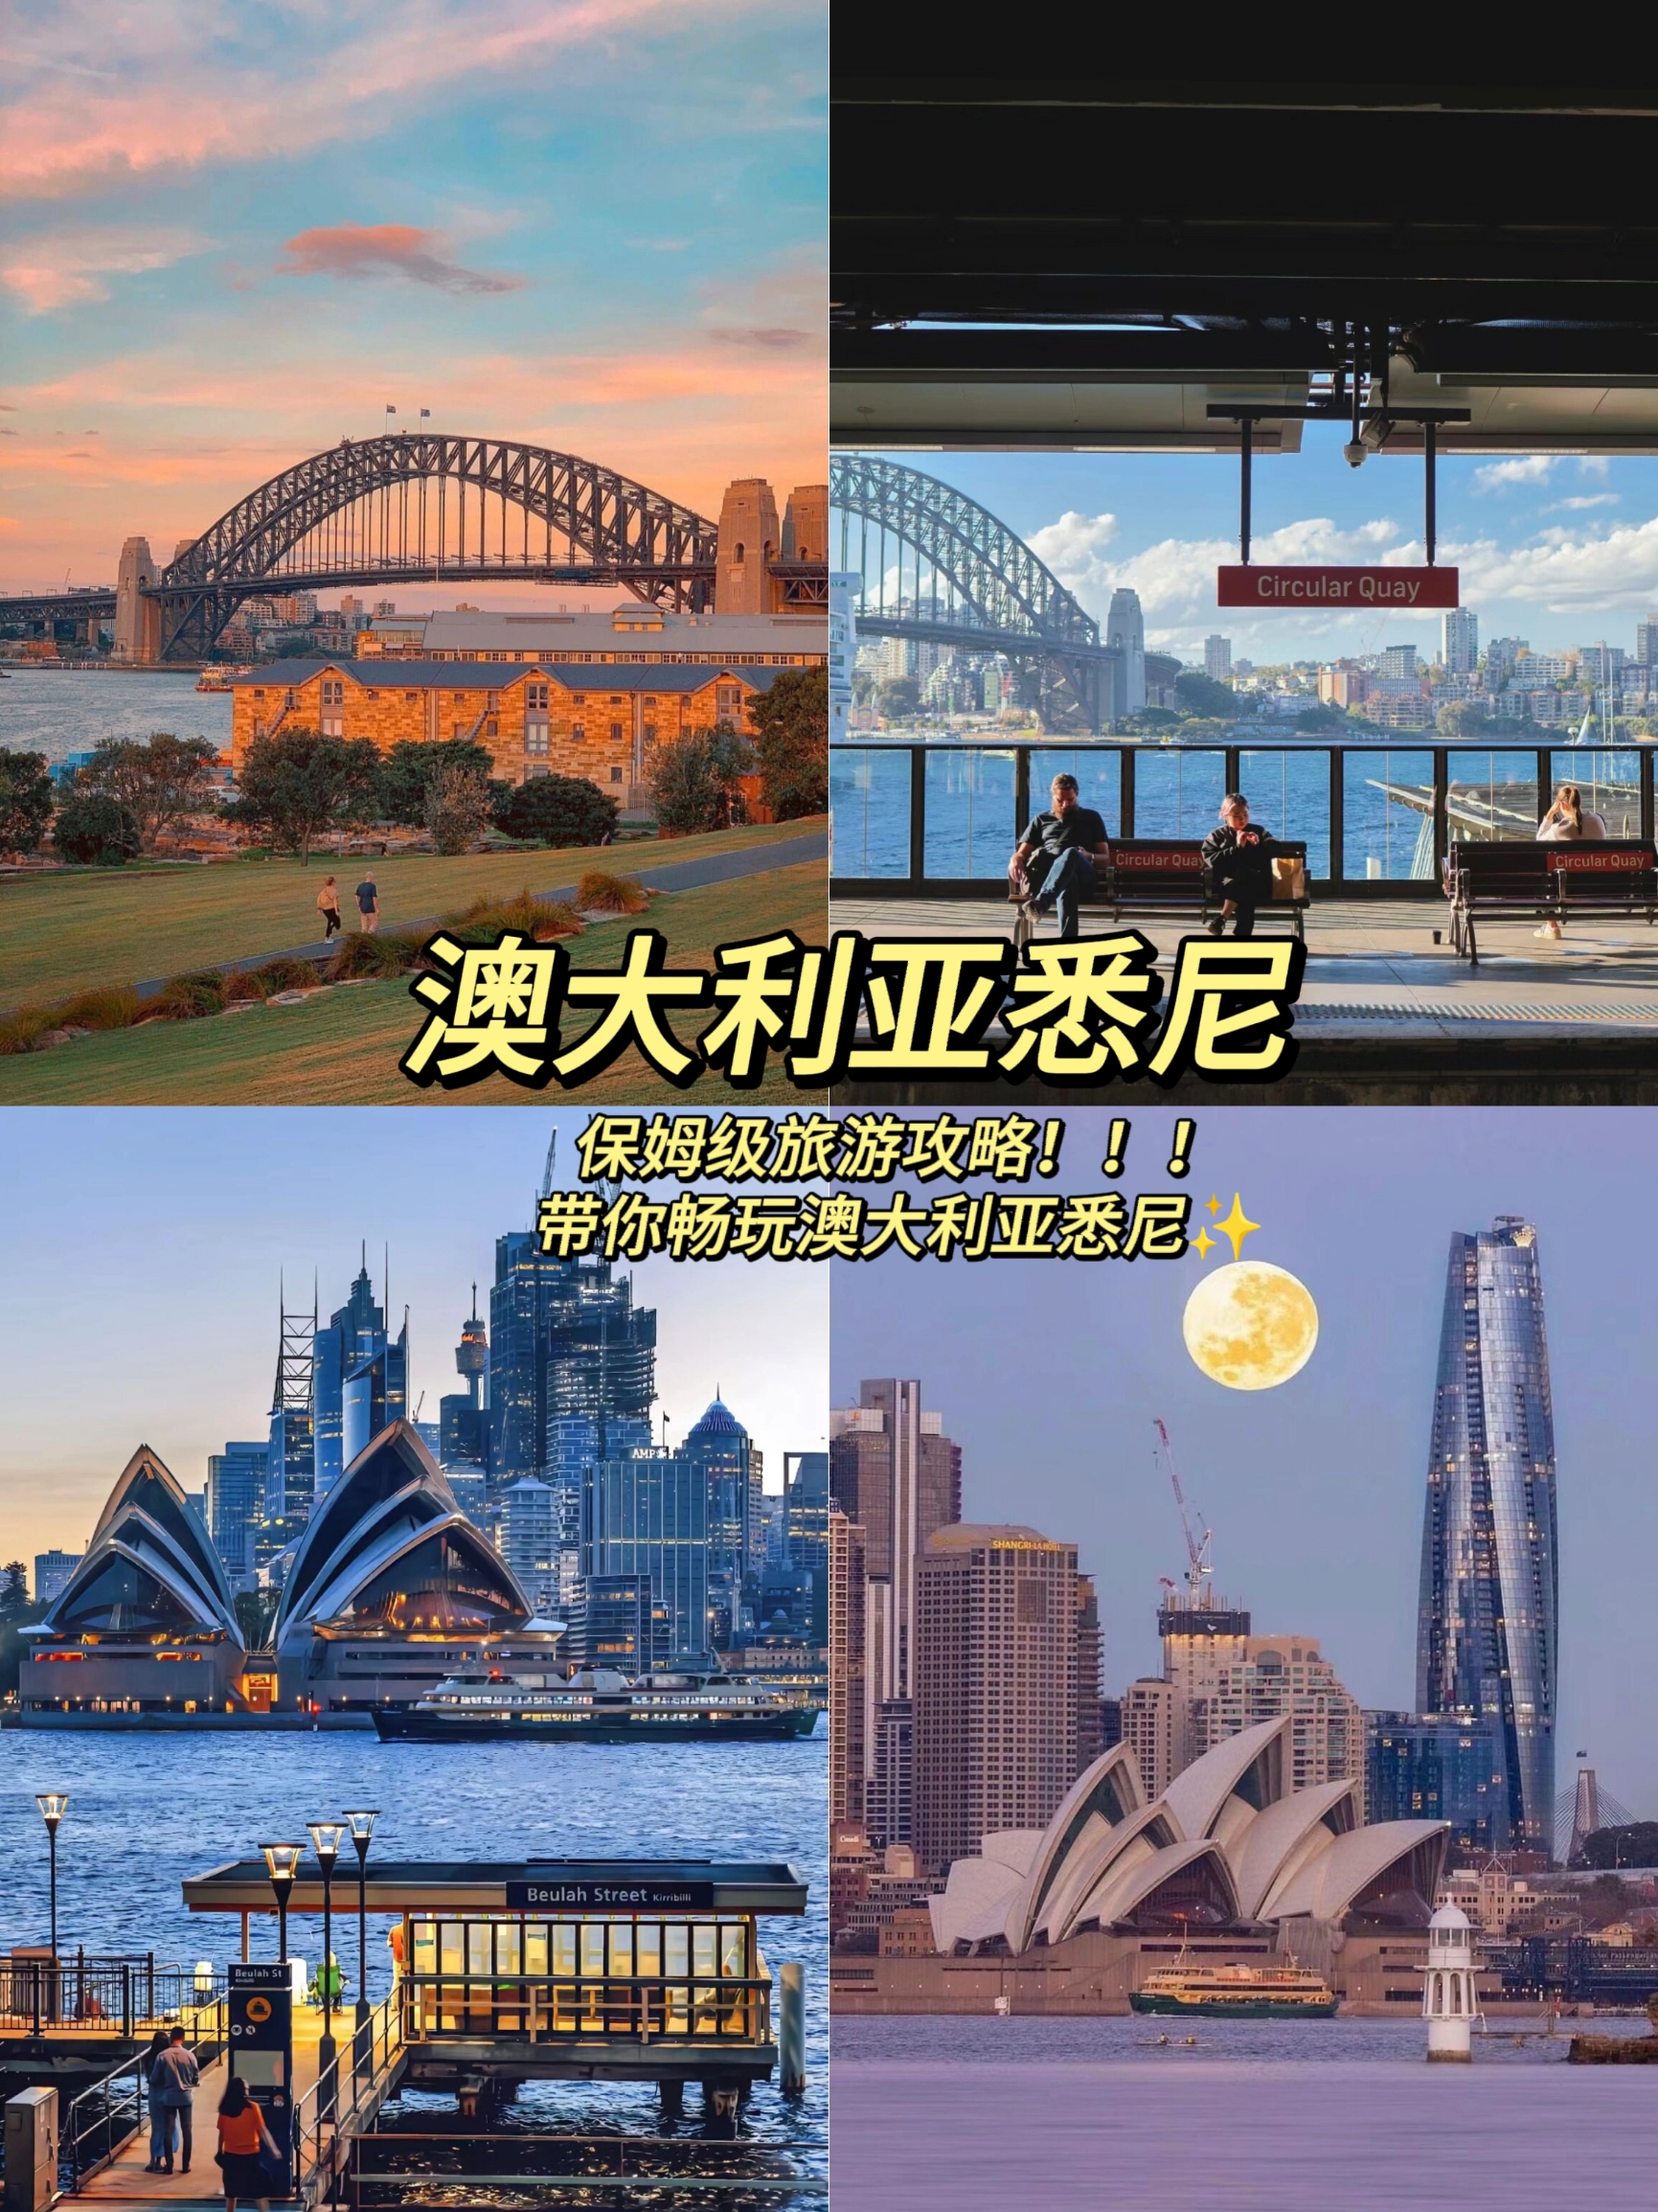 澳大利亚悉尼 保姆级旅游攻略‼️带你畅玩澳大利亚悉尼✨